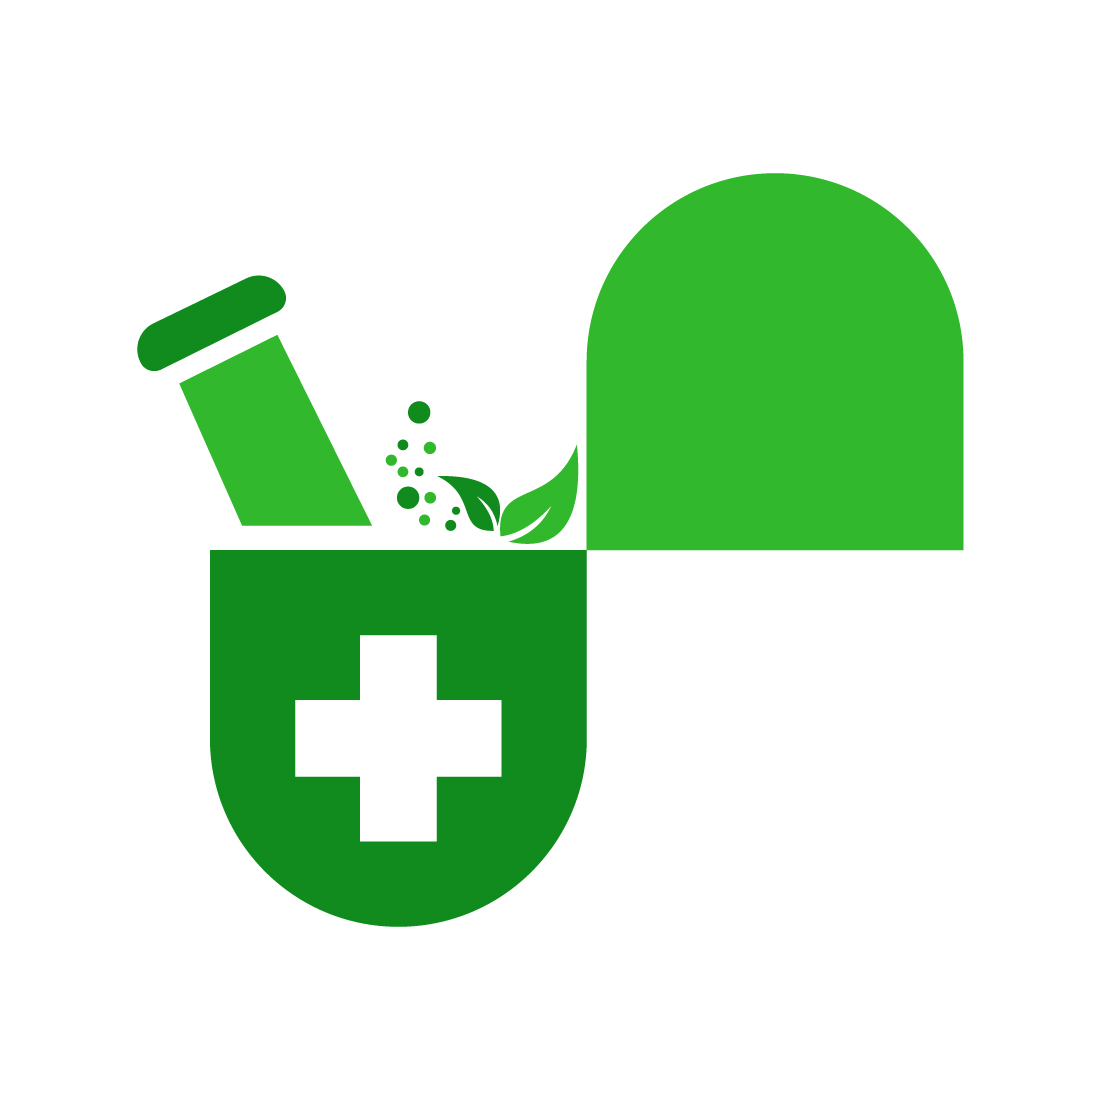 pharmacy symbol image